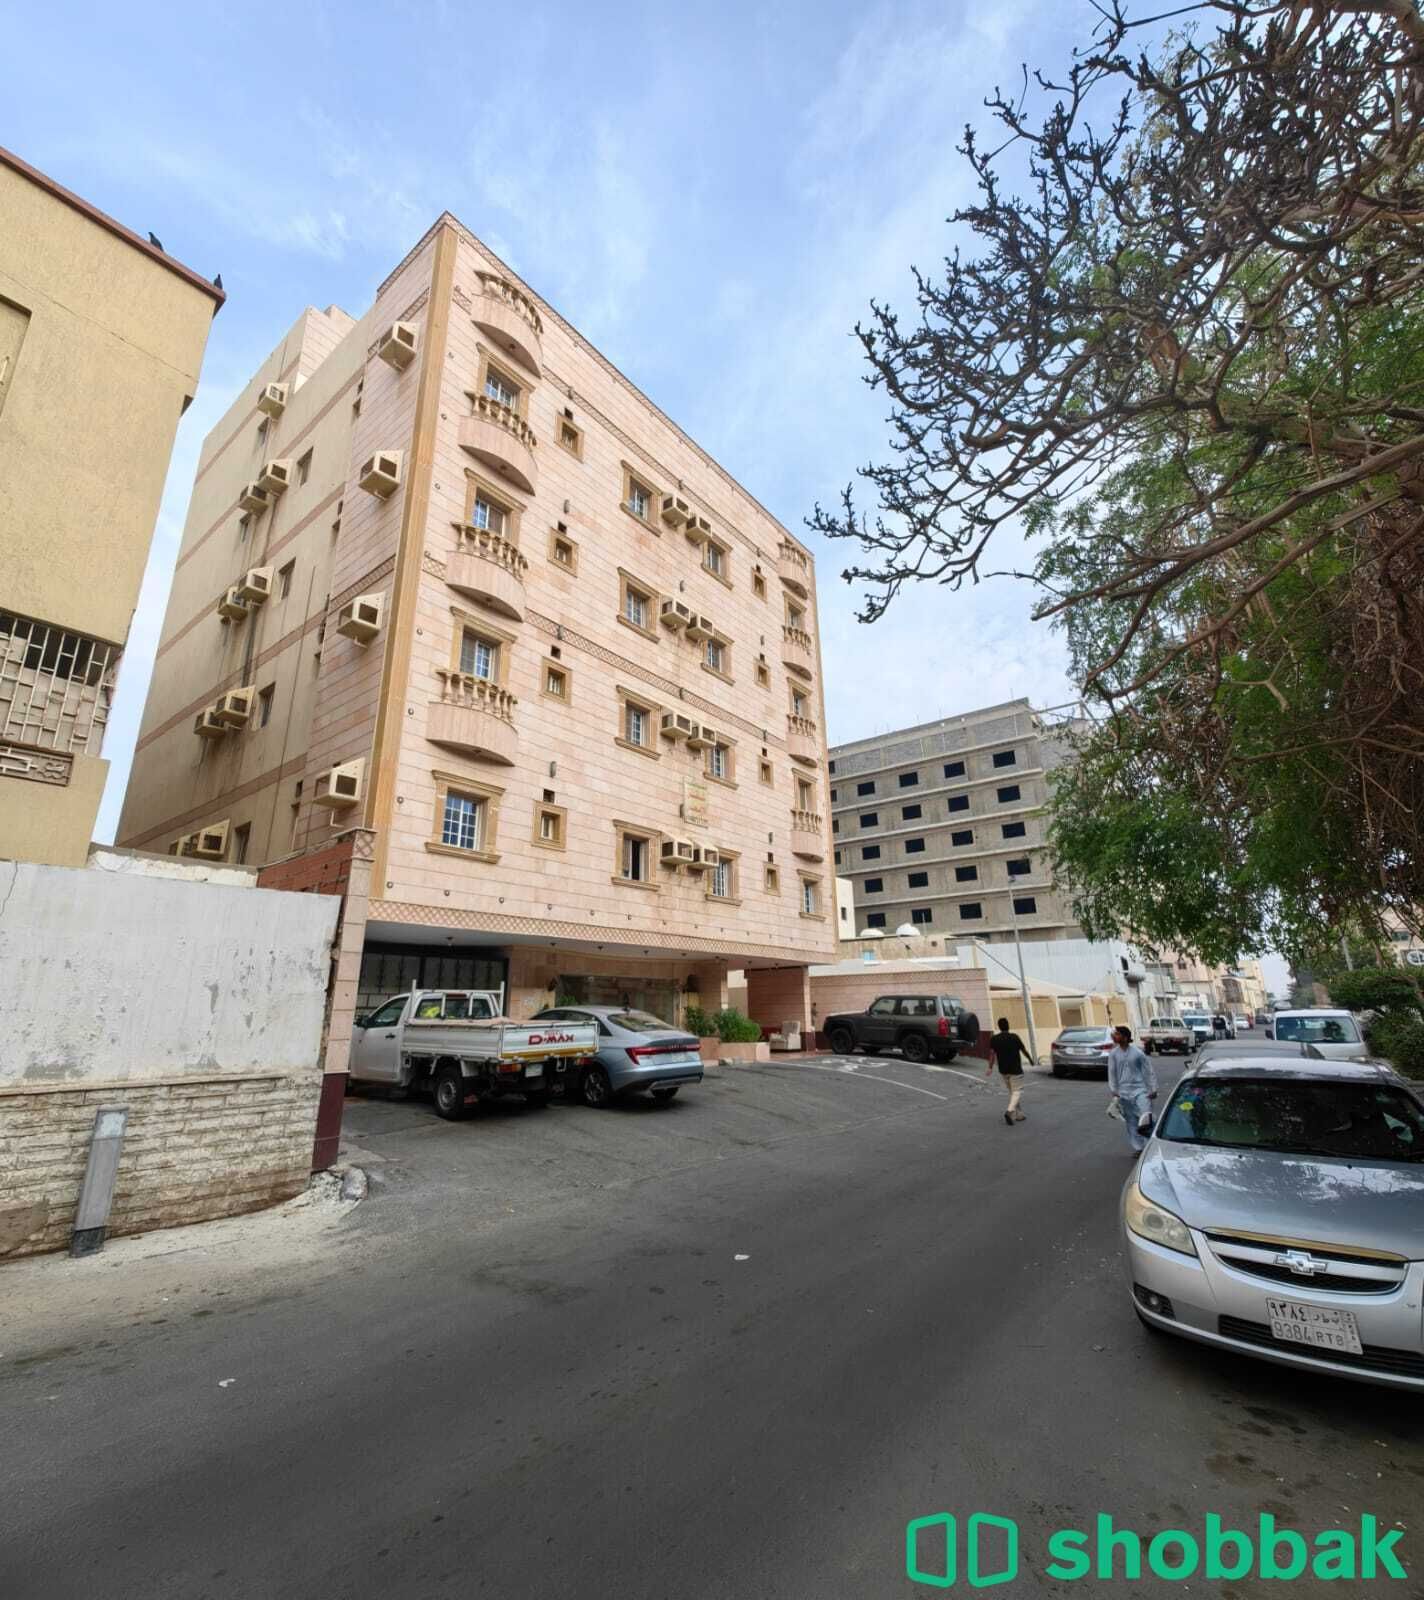 شقة من غرفتين للايجار ومطبخ وحمامين في جدة في حي مشرفه  شباك السعودية